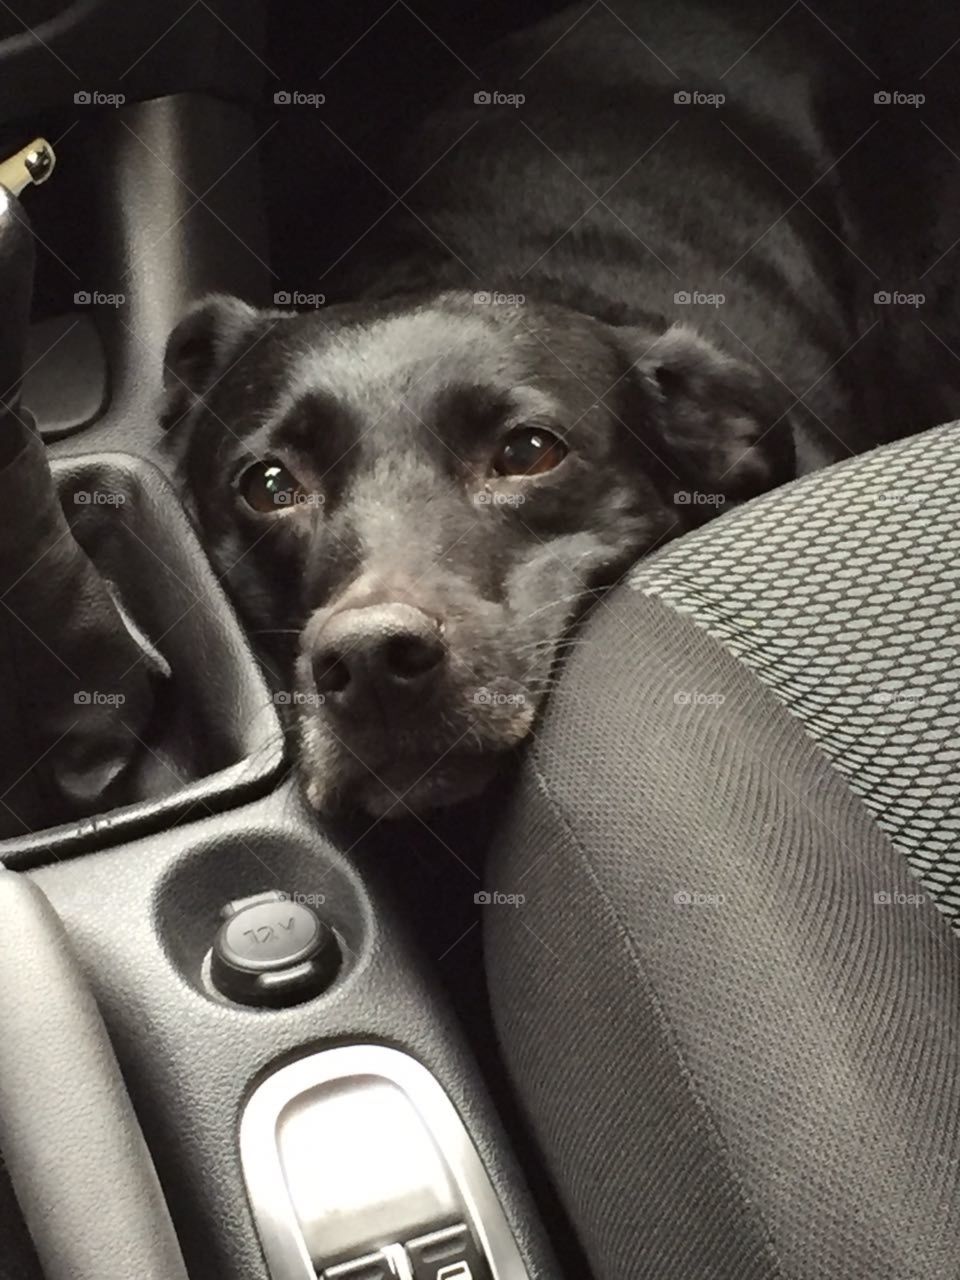 Cachorro no carro - Dog in the car